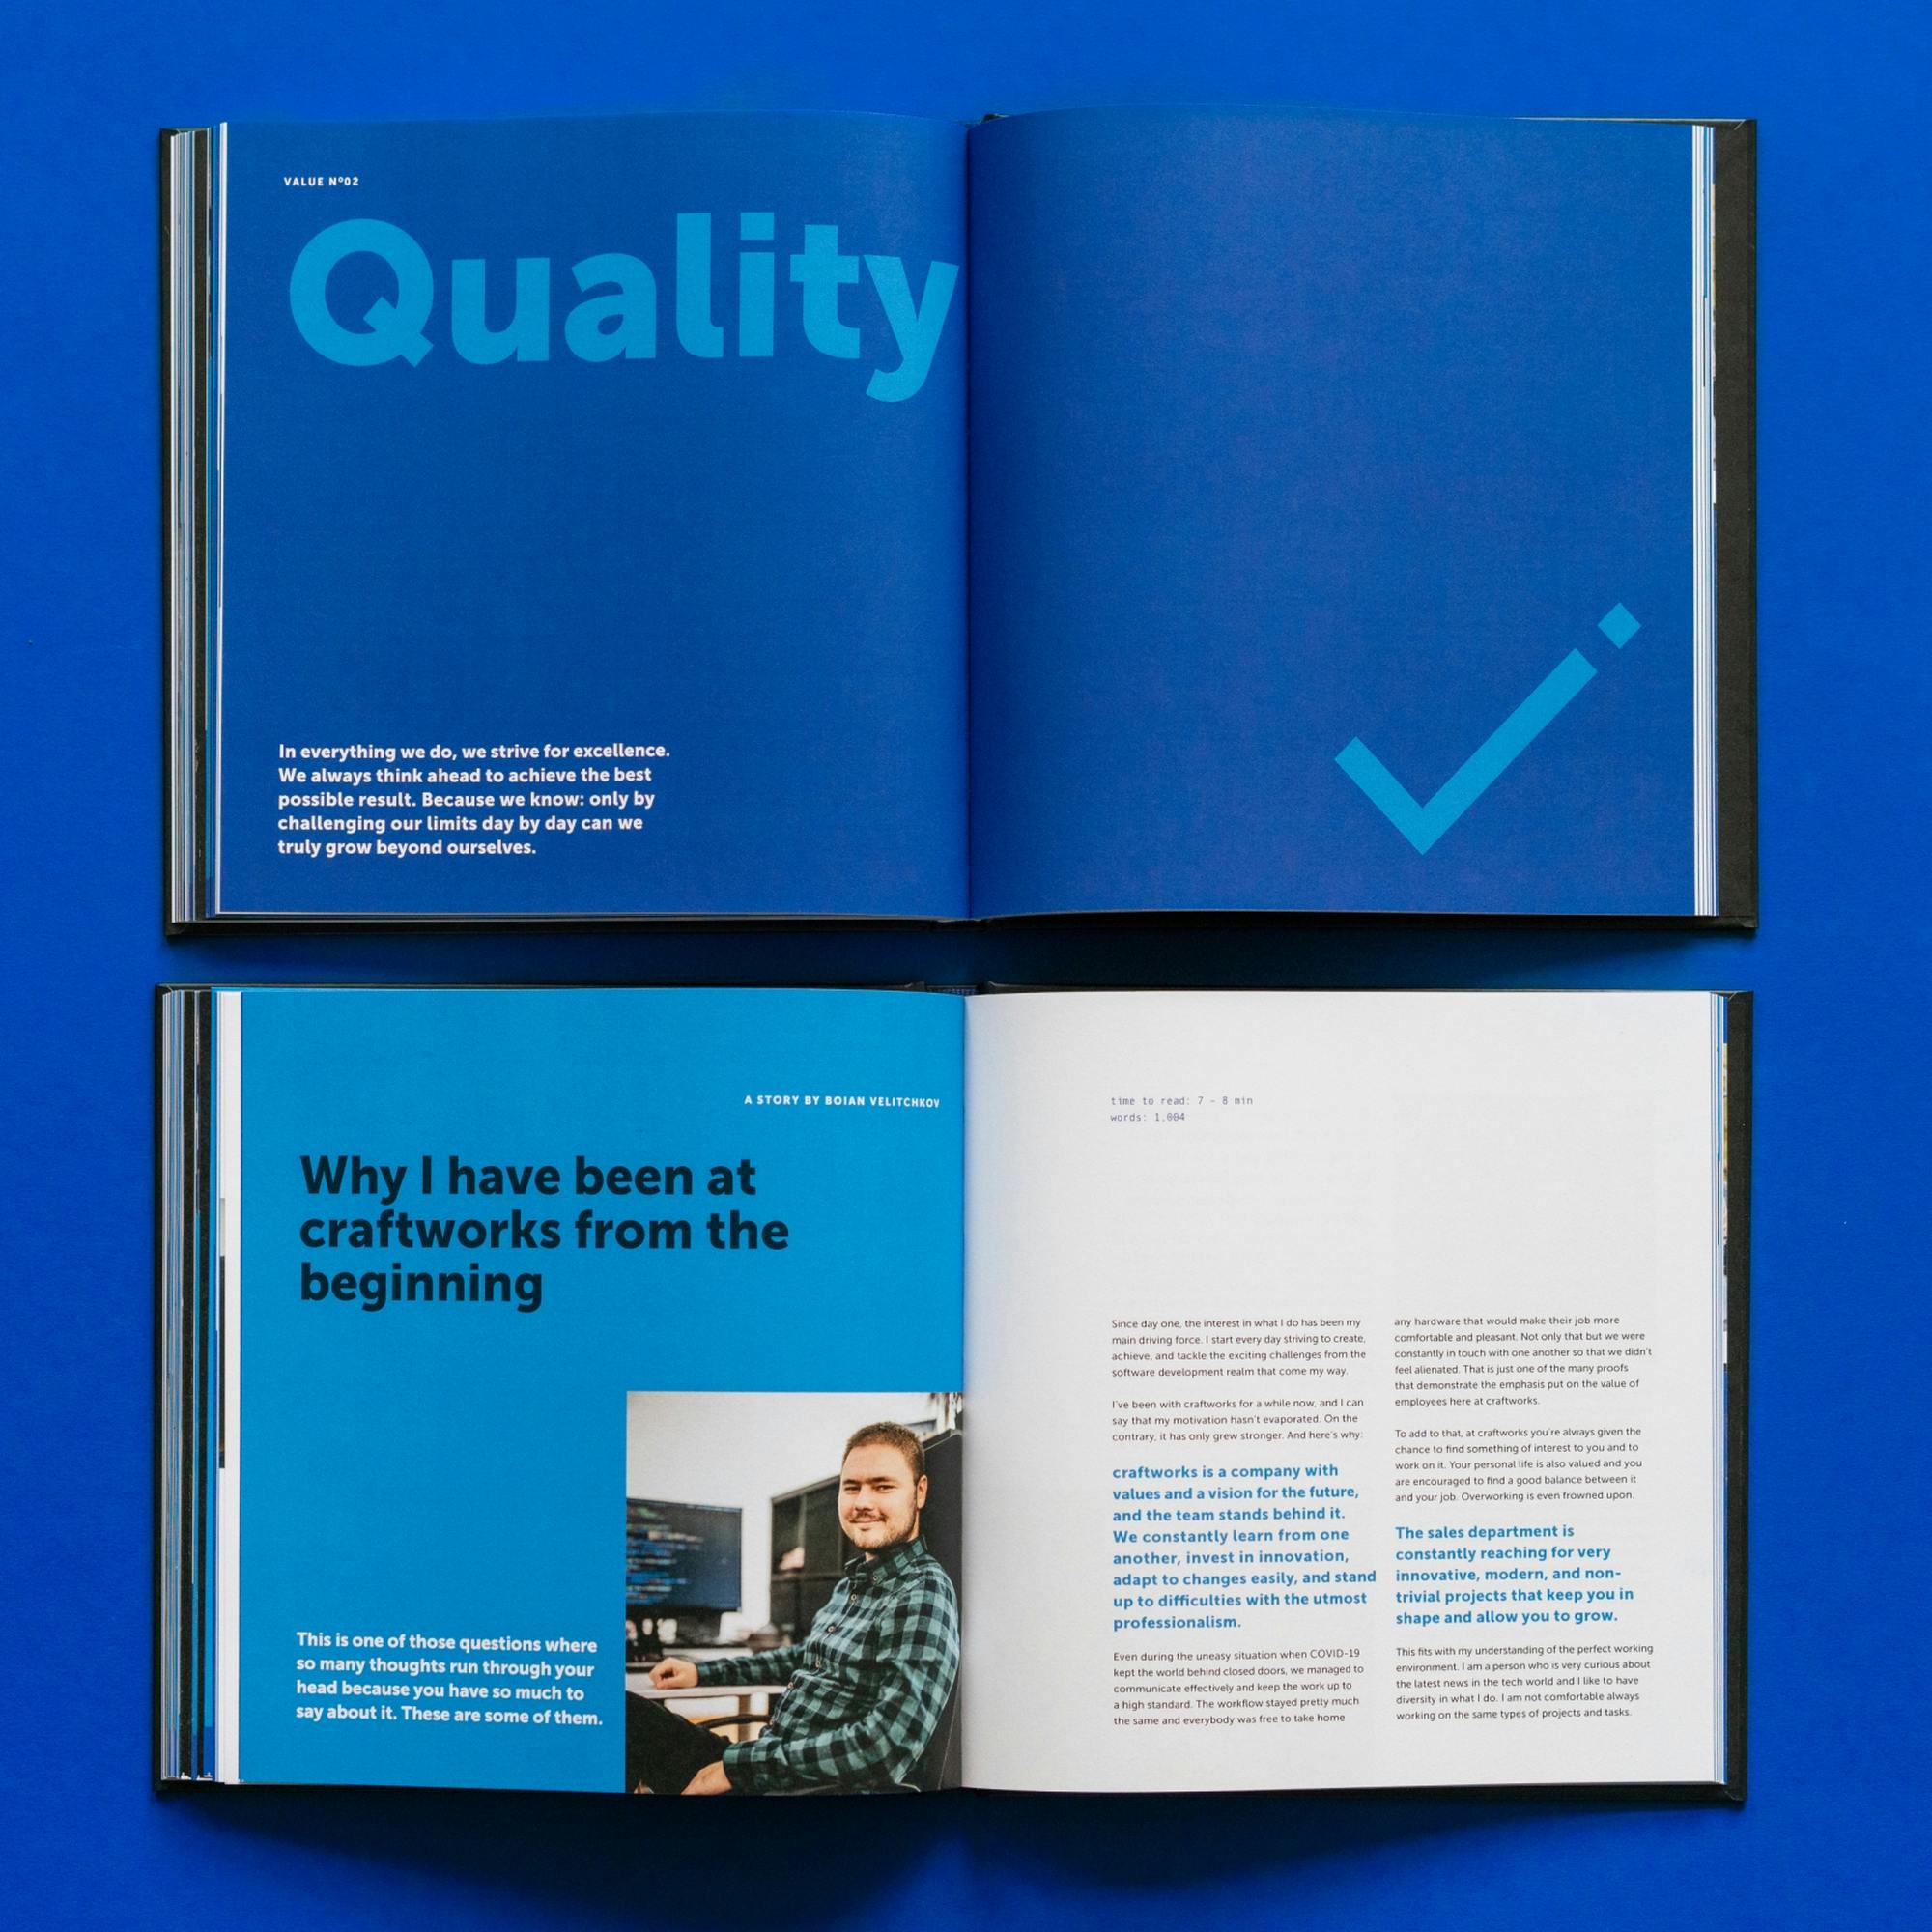 eine Doppelseite mit dem Wert: Quality und Beschreibungstext, zweite Doppelseite mit einer Story eines Mitarbeiters über Quality © goodmatters